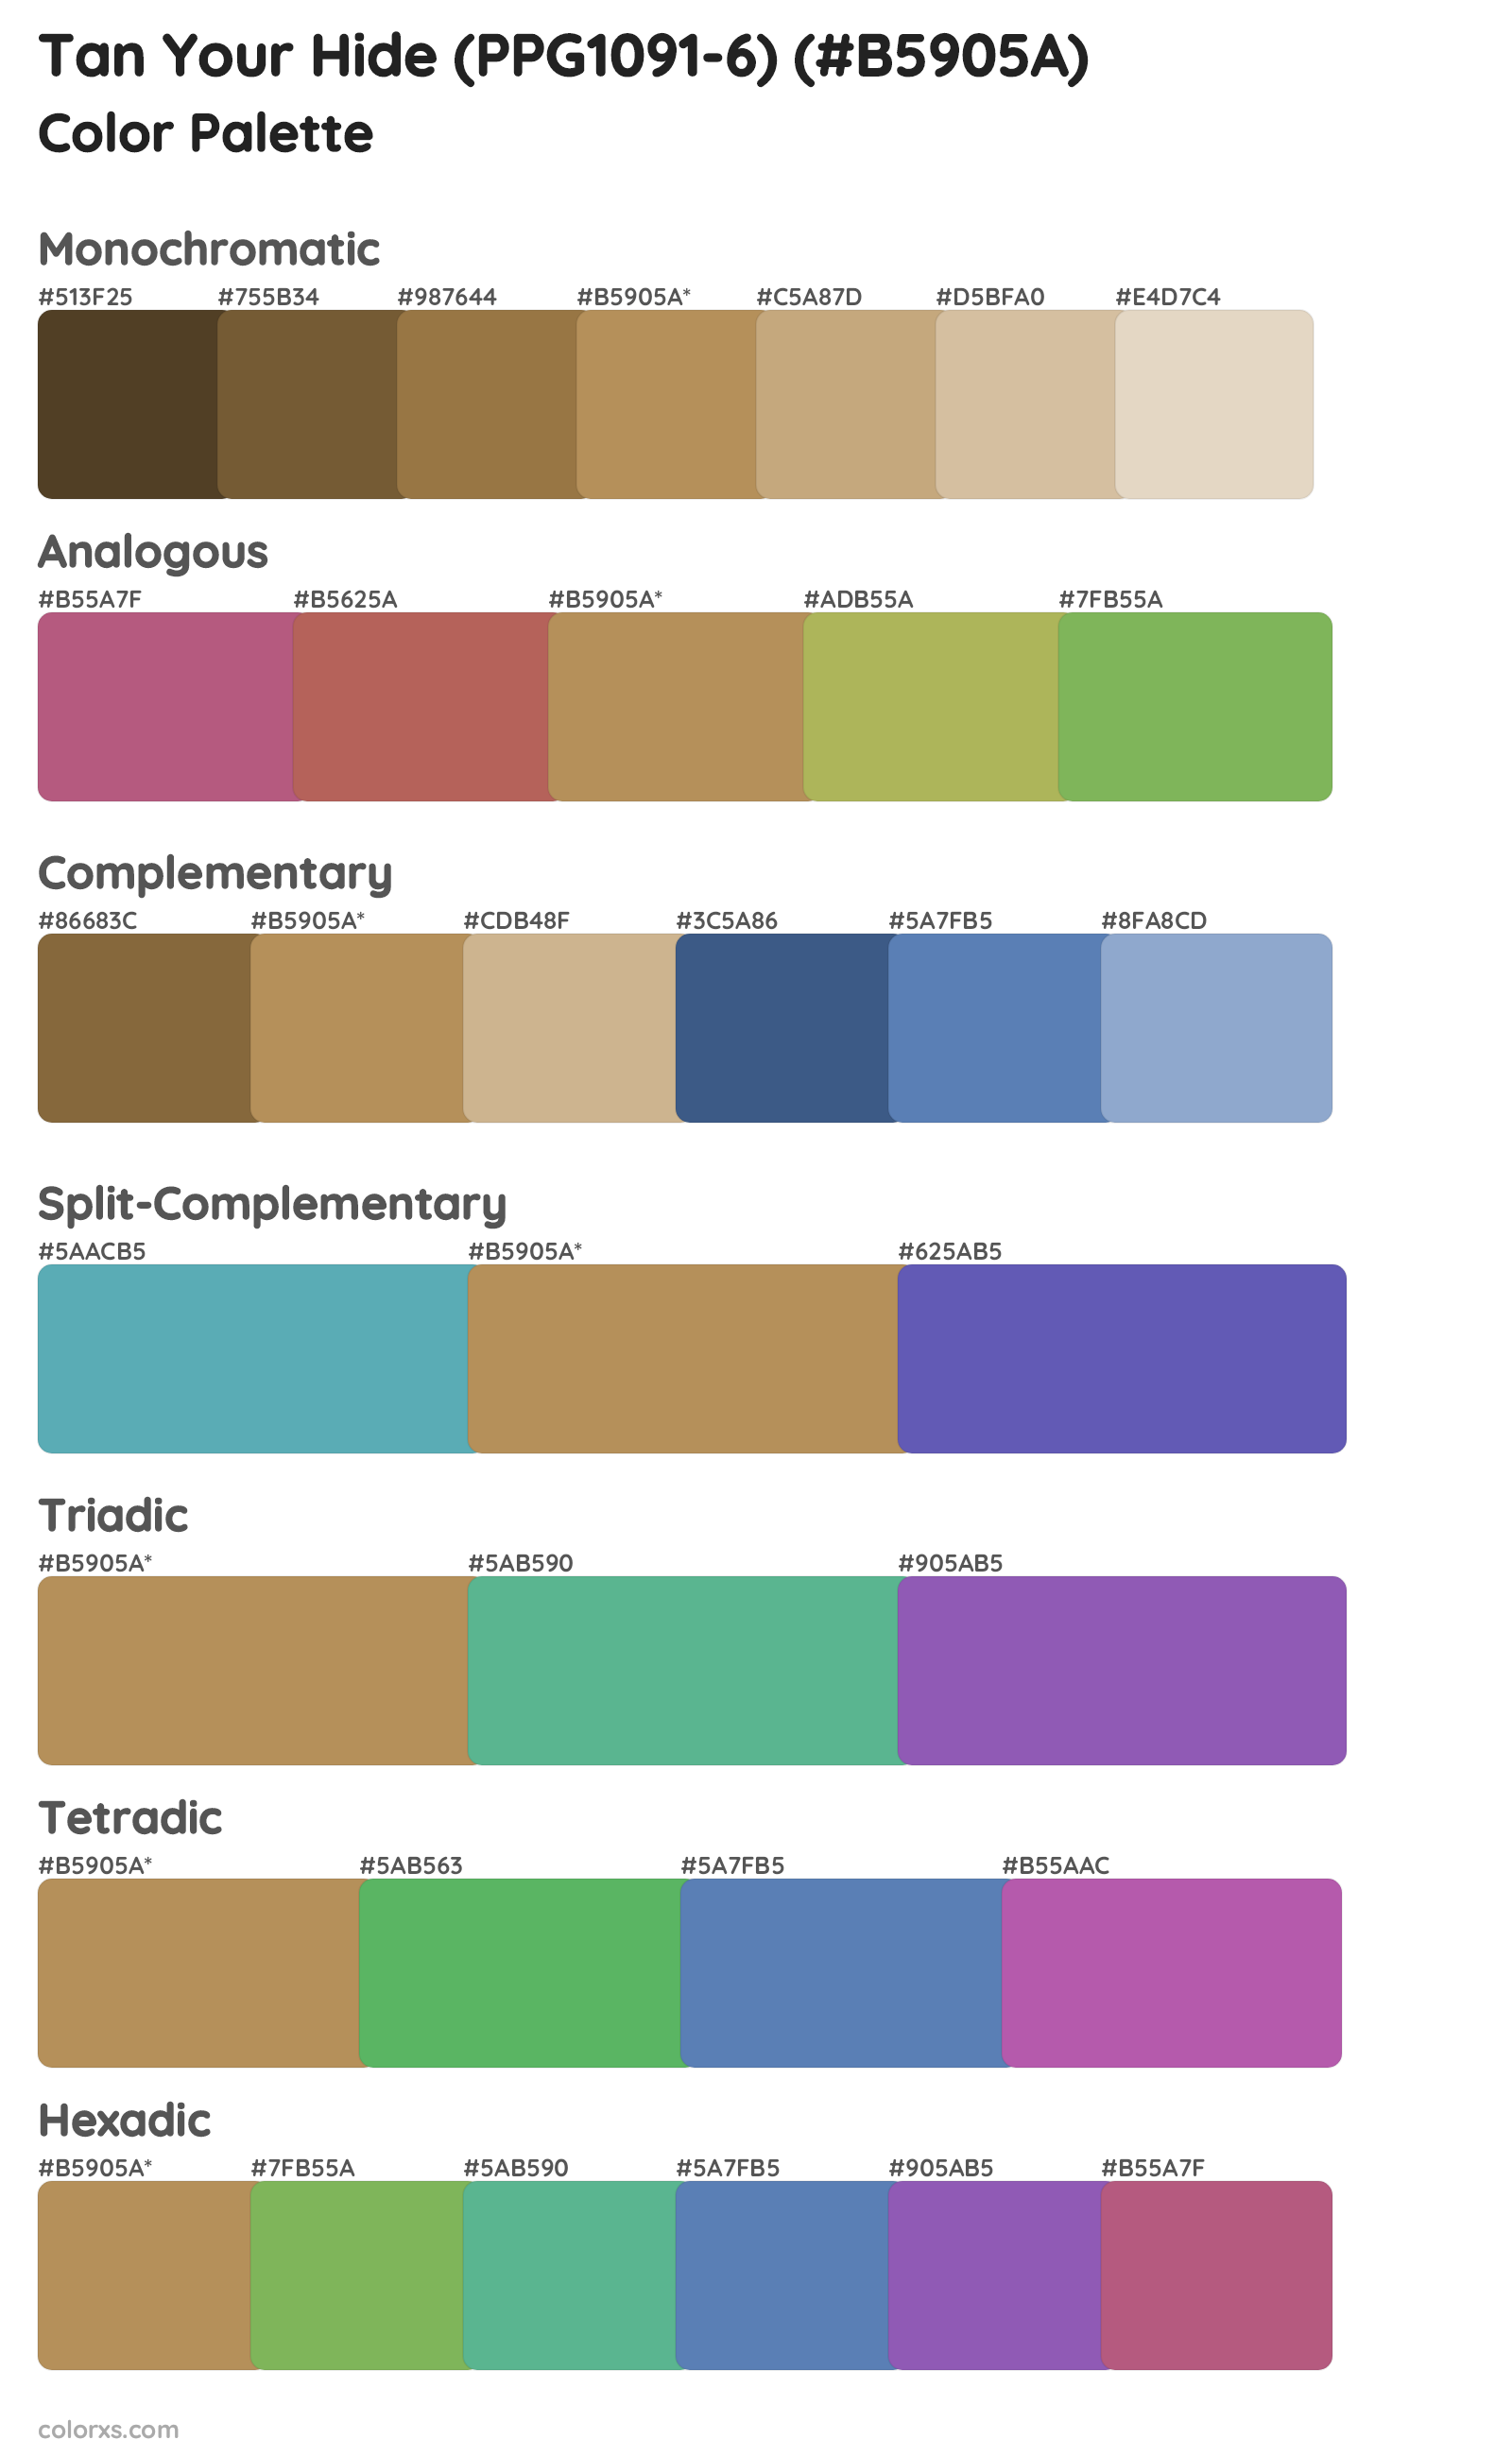 Tan Your Hide (PPG1091-6) Color Scheme Palettes